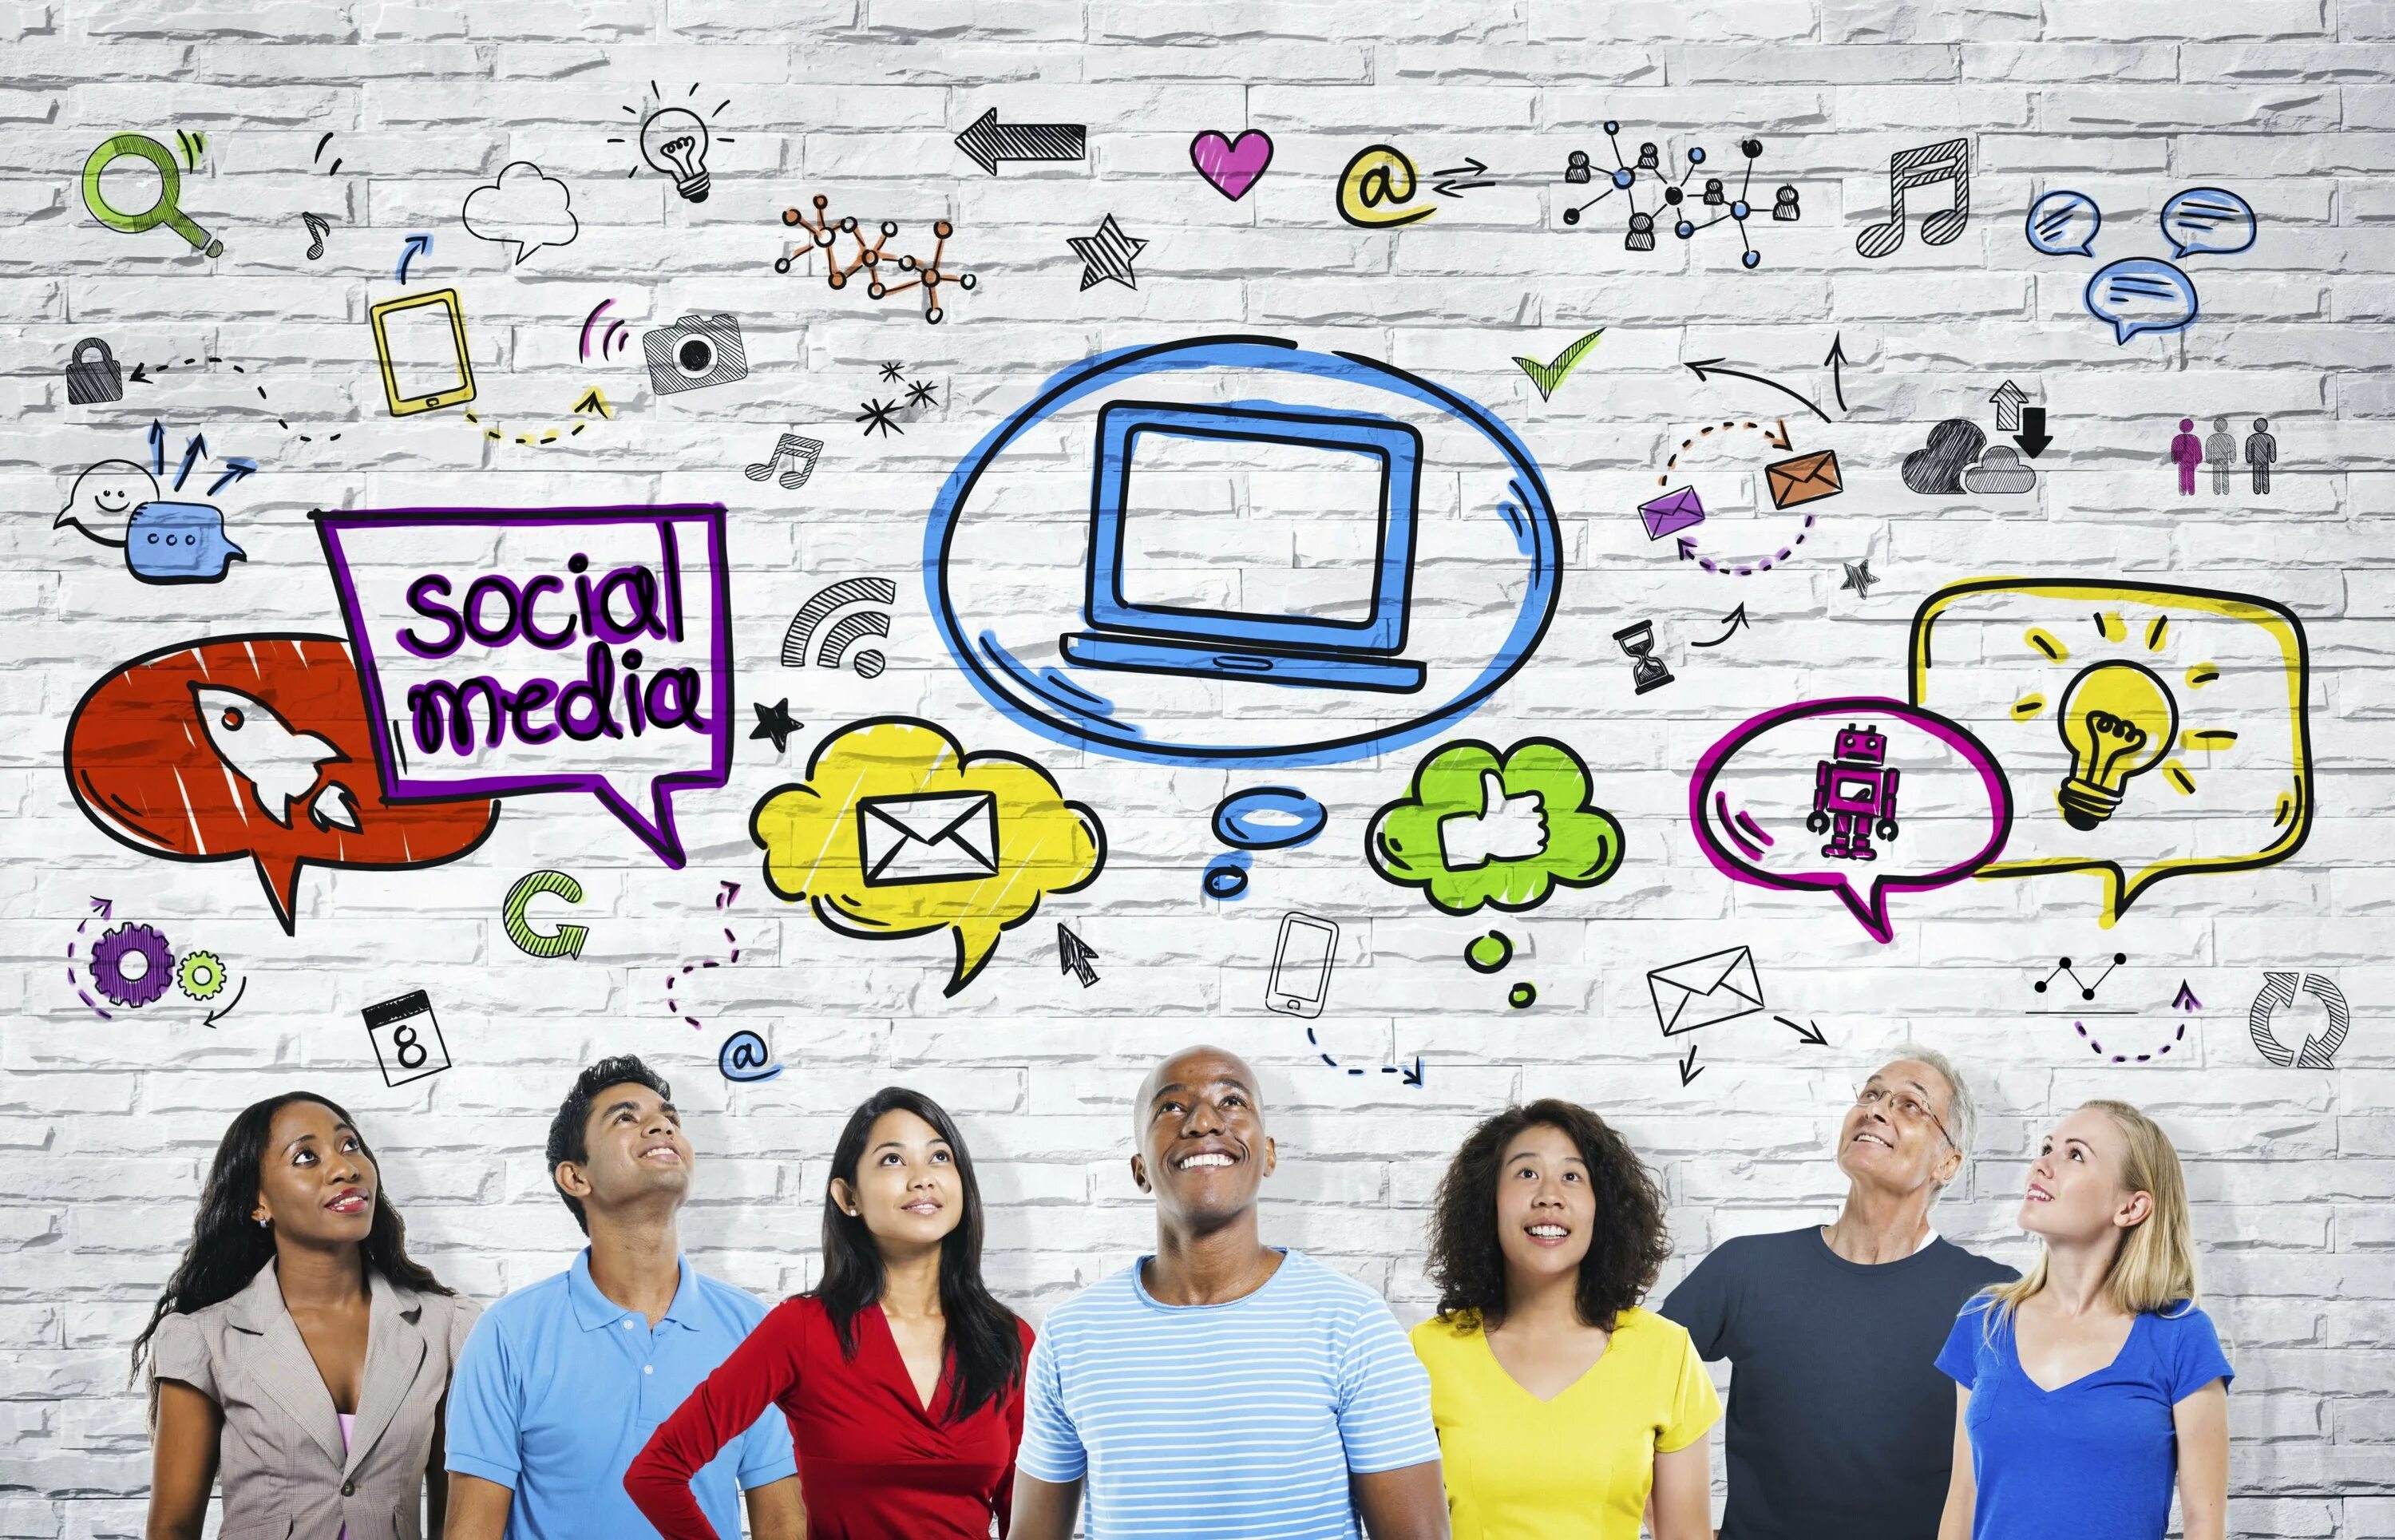 Shows social. Общение в социальных сетях. Иллюстрации на тему социальных сетей. Контент в социальных сетях. Социальные сети изображение.